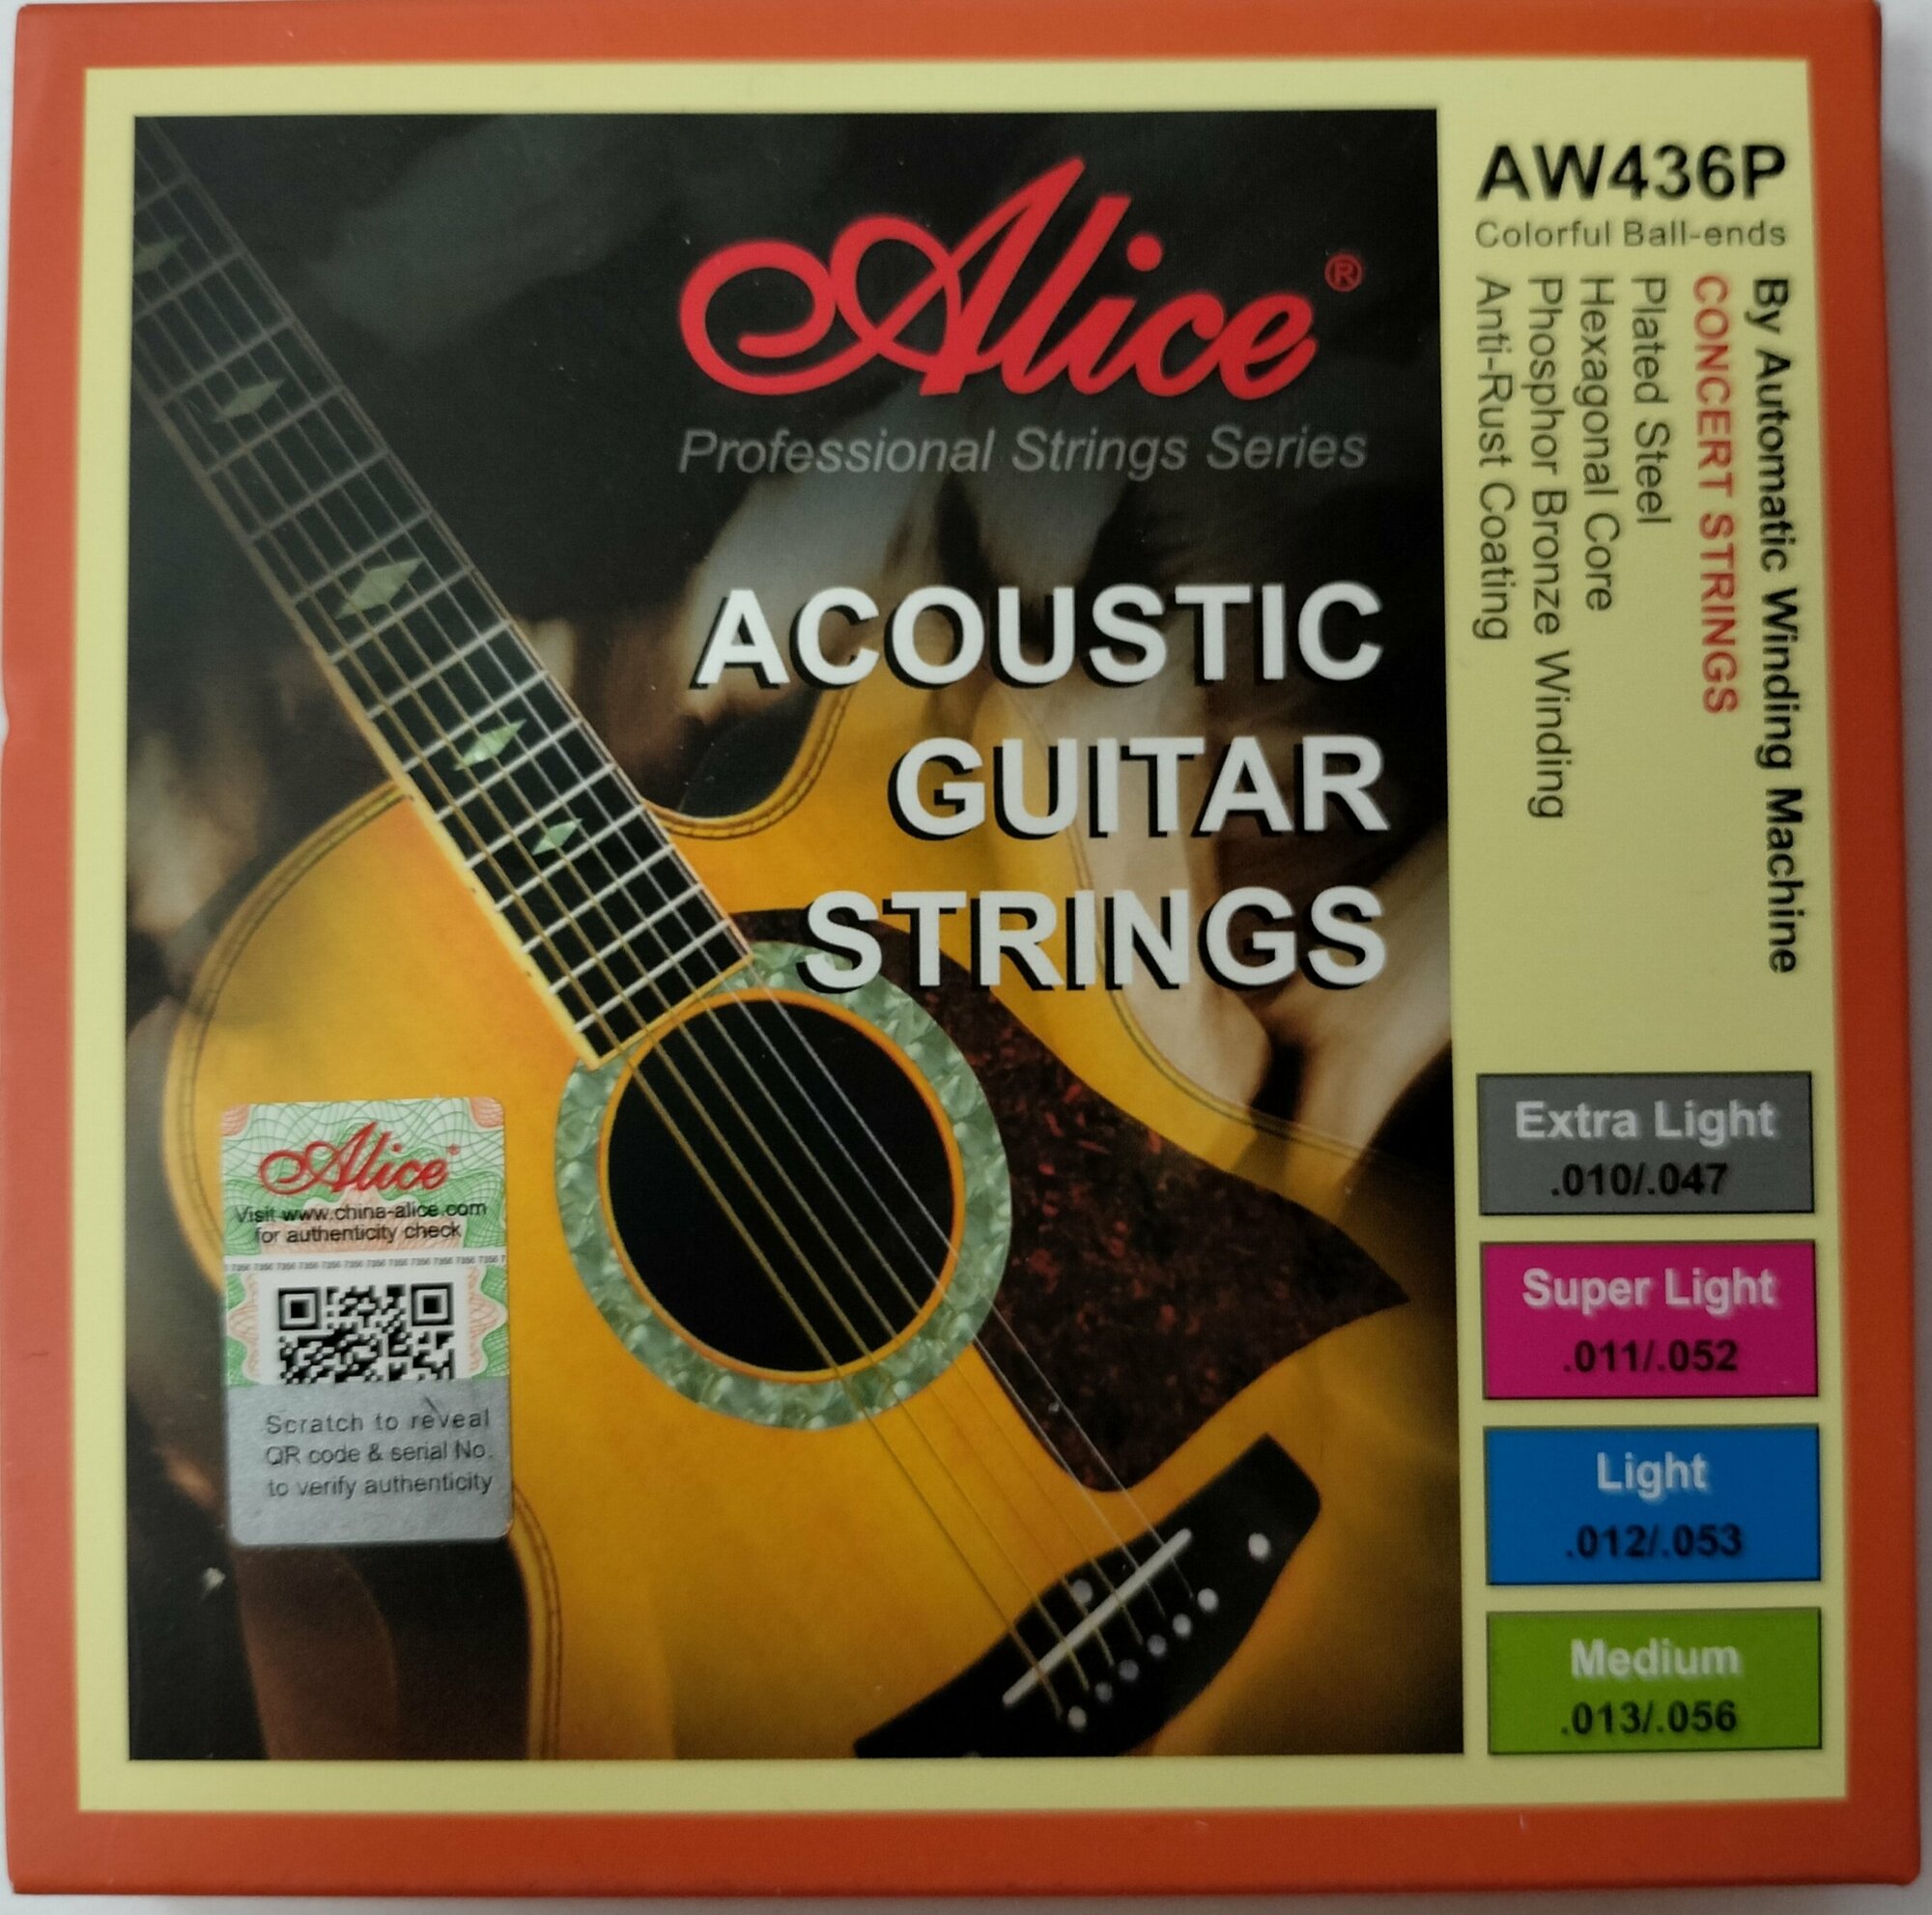 Струны Alice AW436P-XL для акустической гитары обмотка фосфорная бронза (10-47)